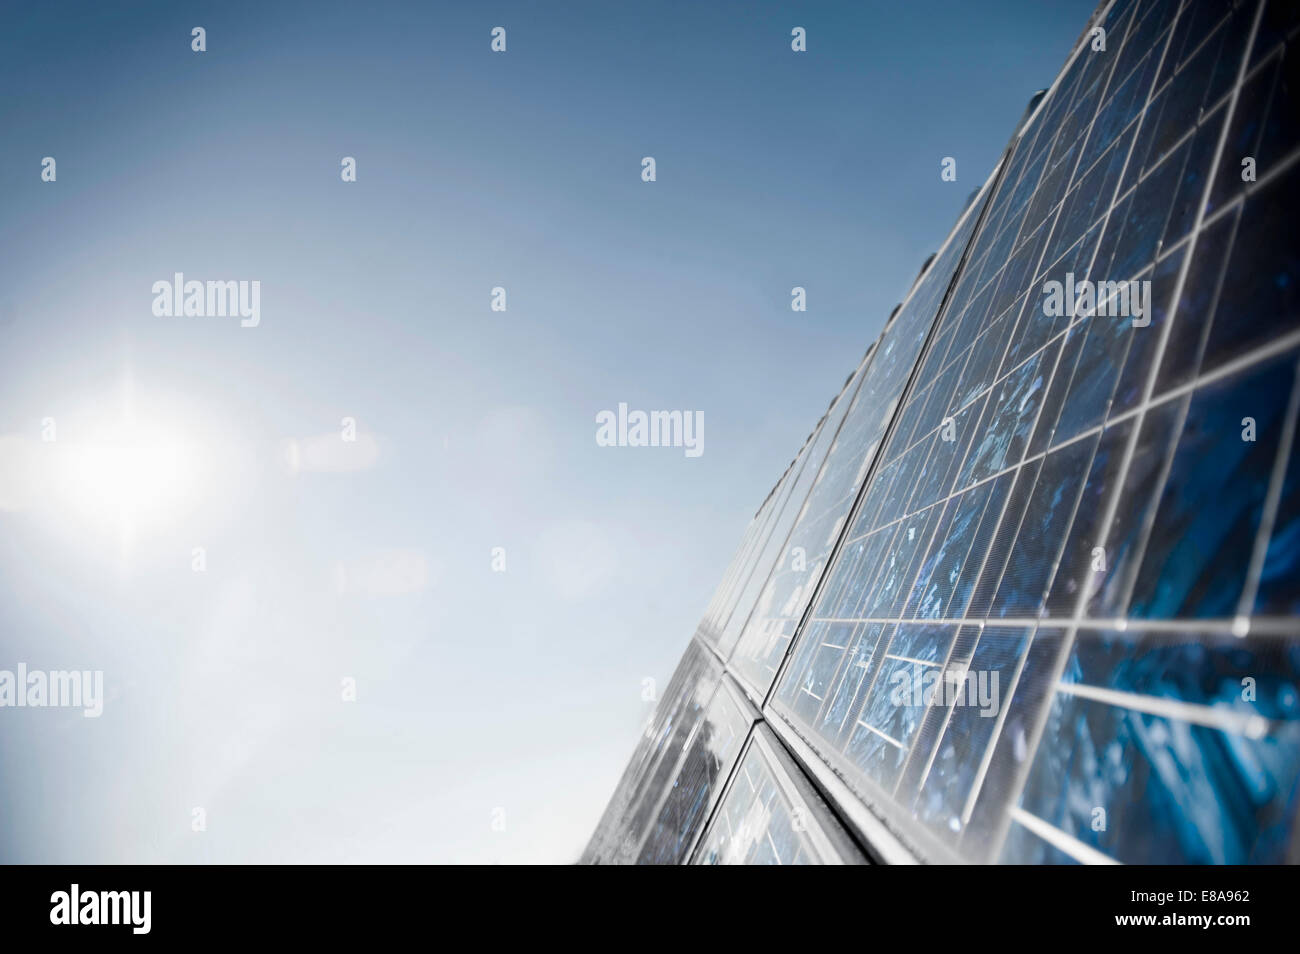 Solar panels, Bavaria, Germany Stock Photo